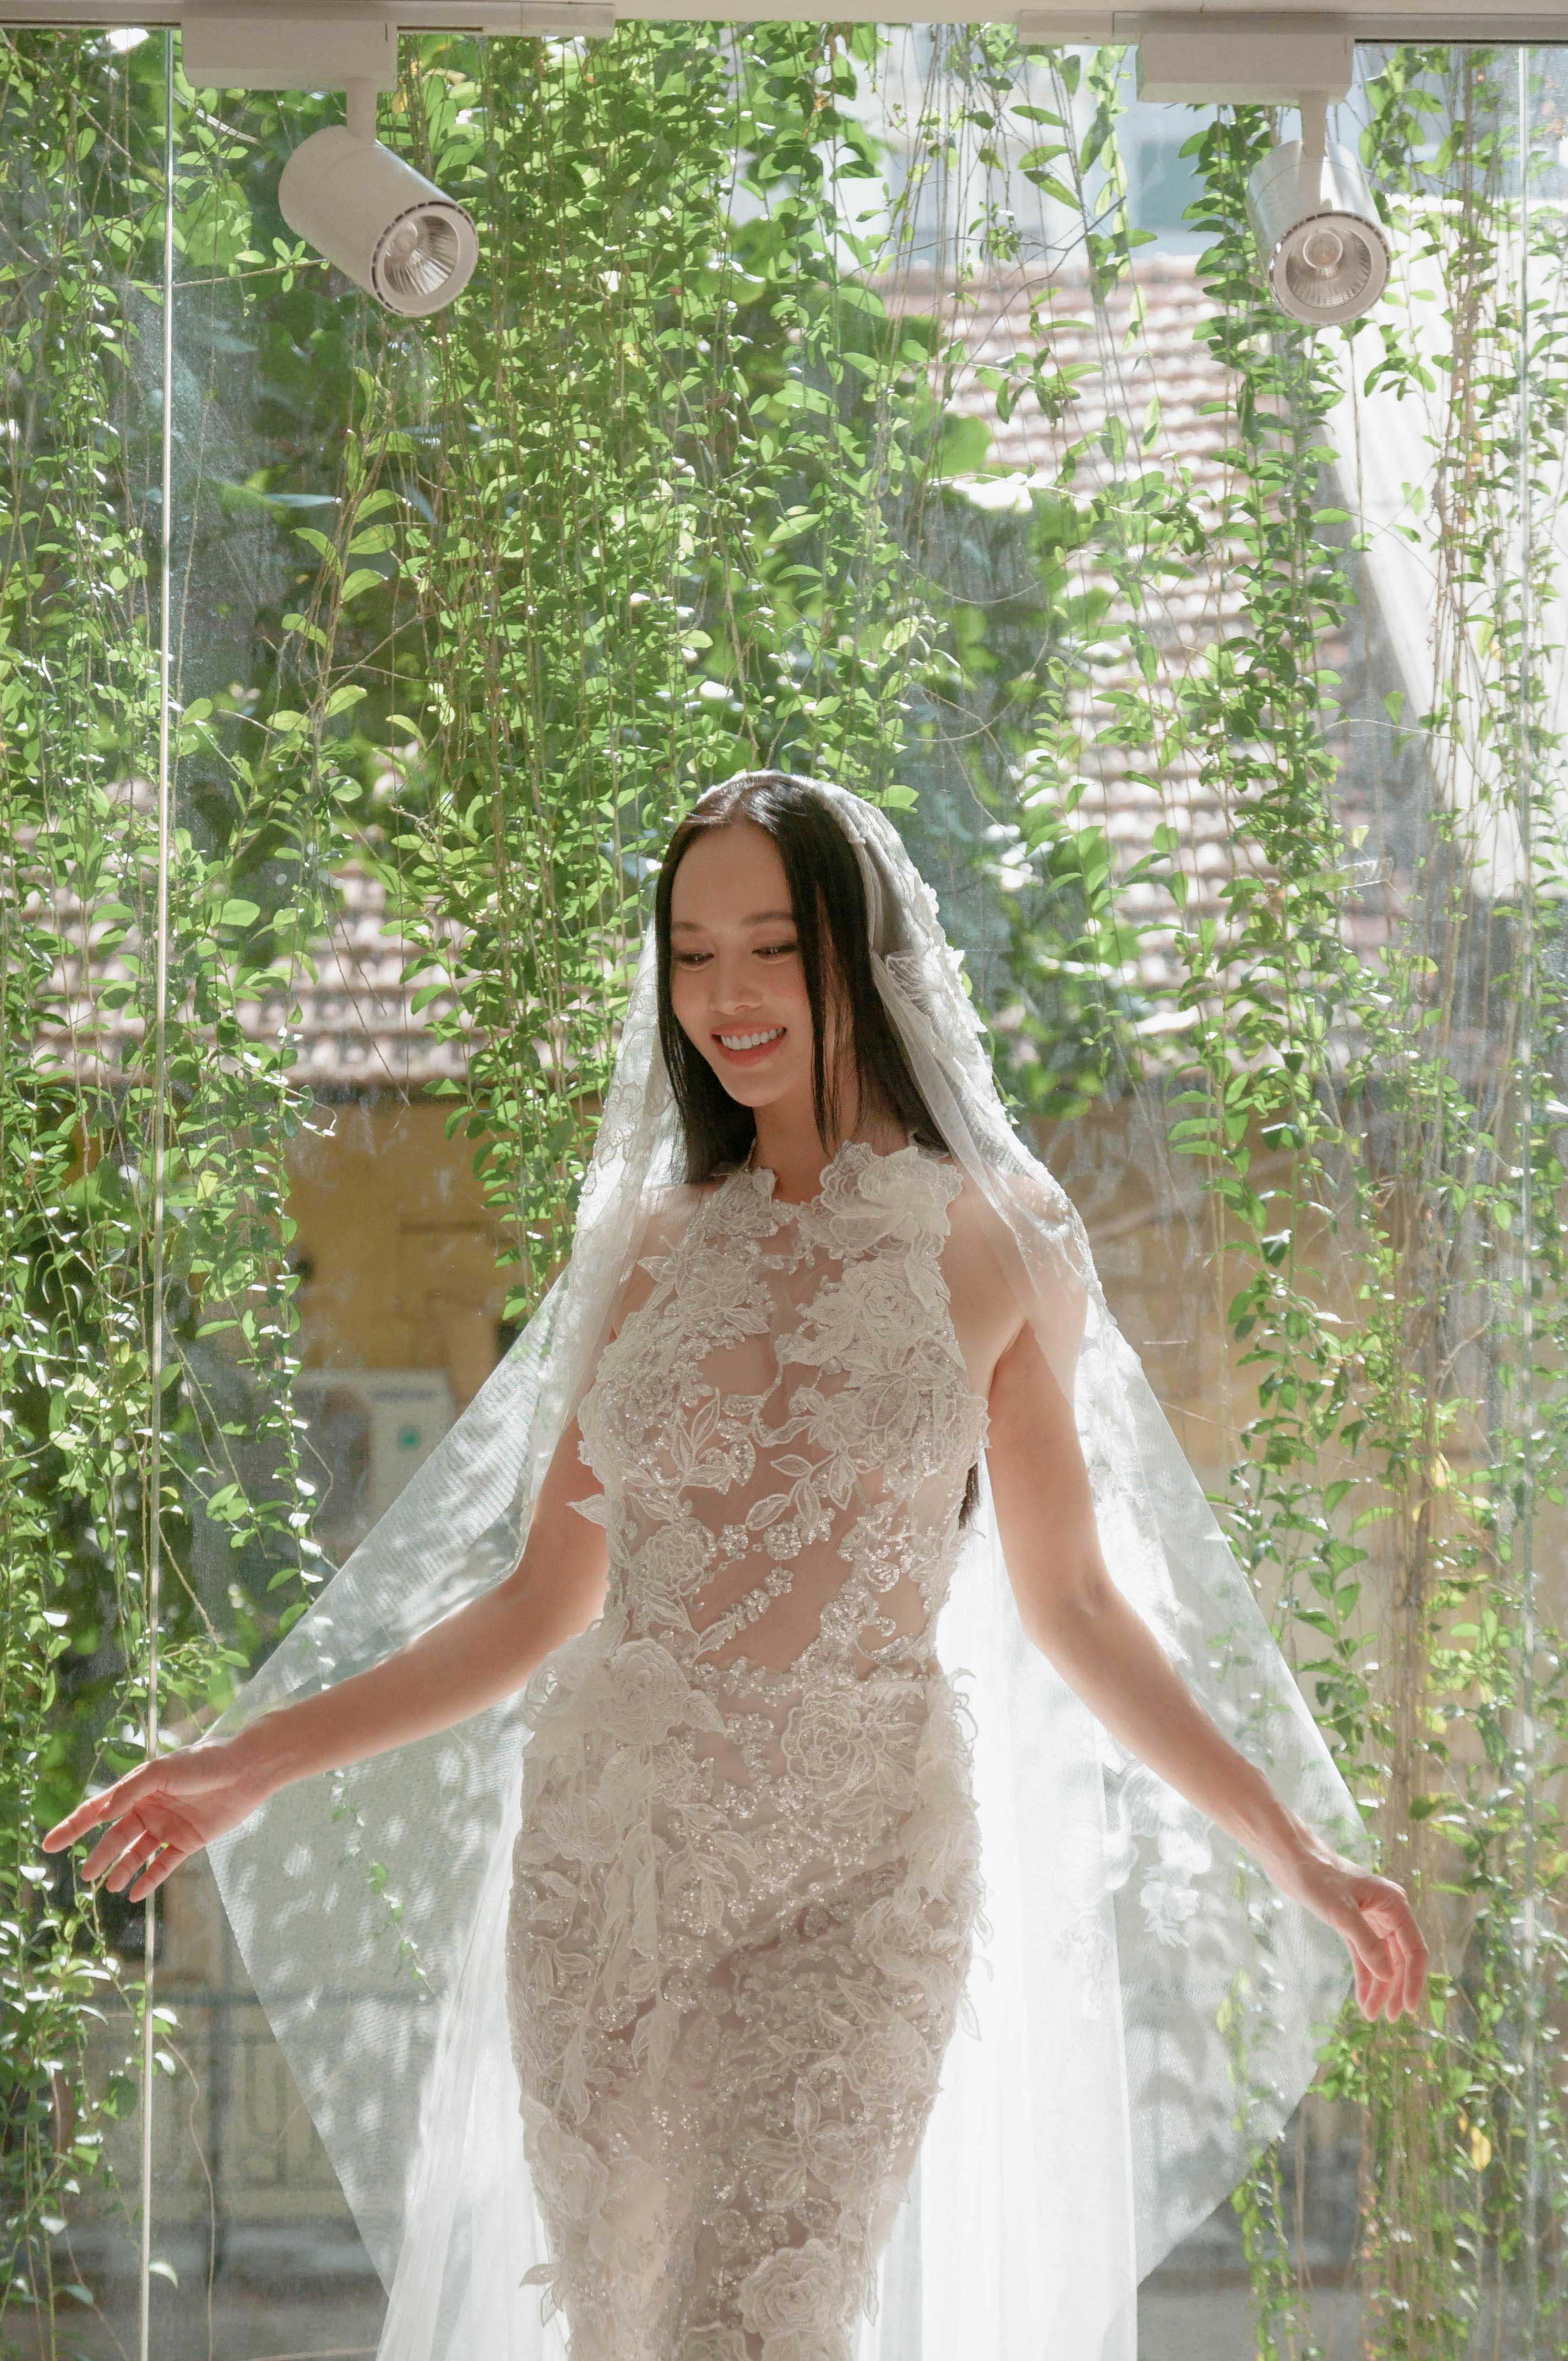 Lily Luta hóa công chúa gợi cảm với váy cưới xanh ngọc|Giải trí|Bản tin Sài  Gòn News|Tin Tức Sài Gòn